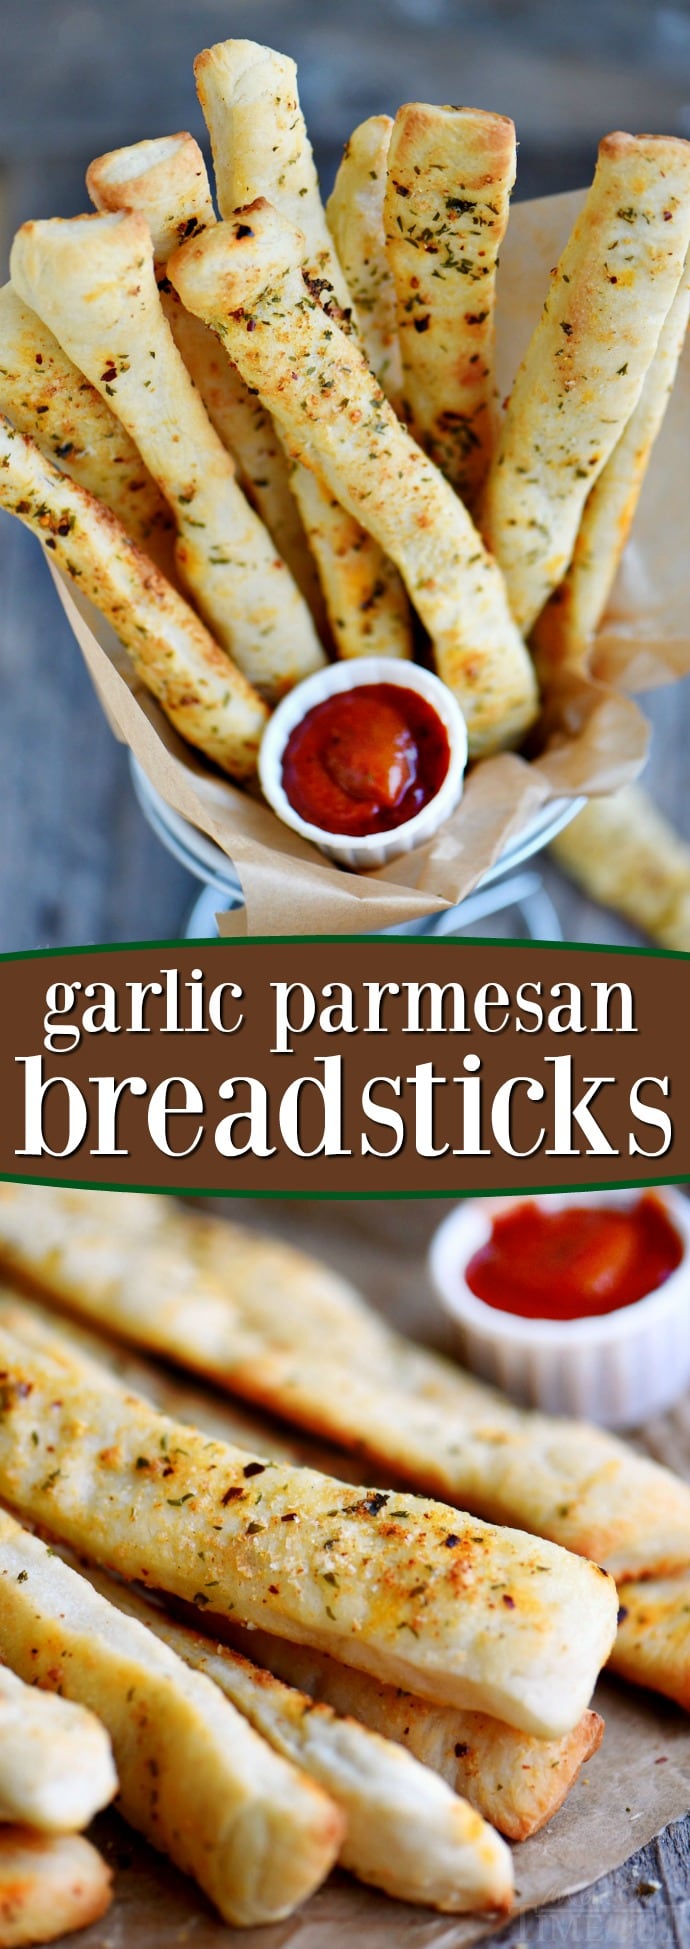 breadsticks-garlic-parmesan-collage